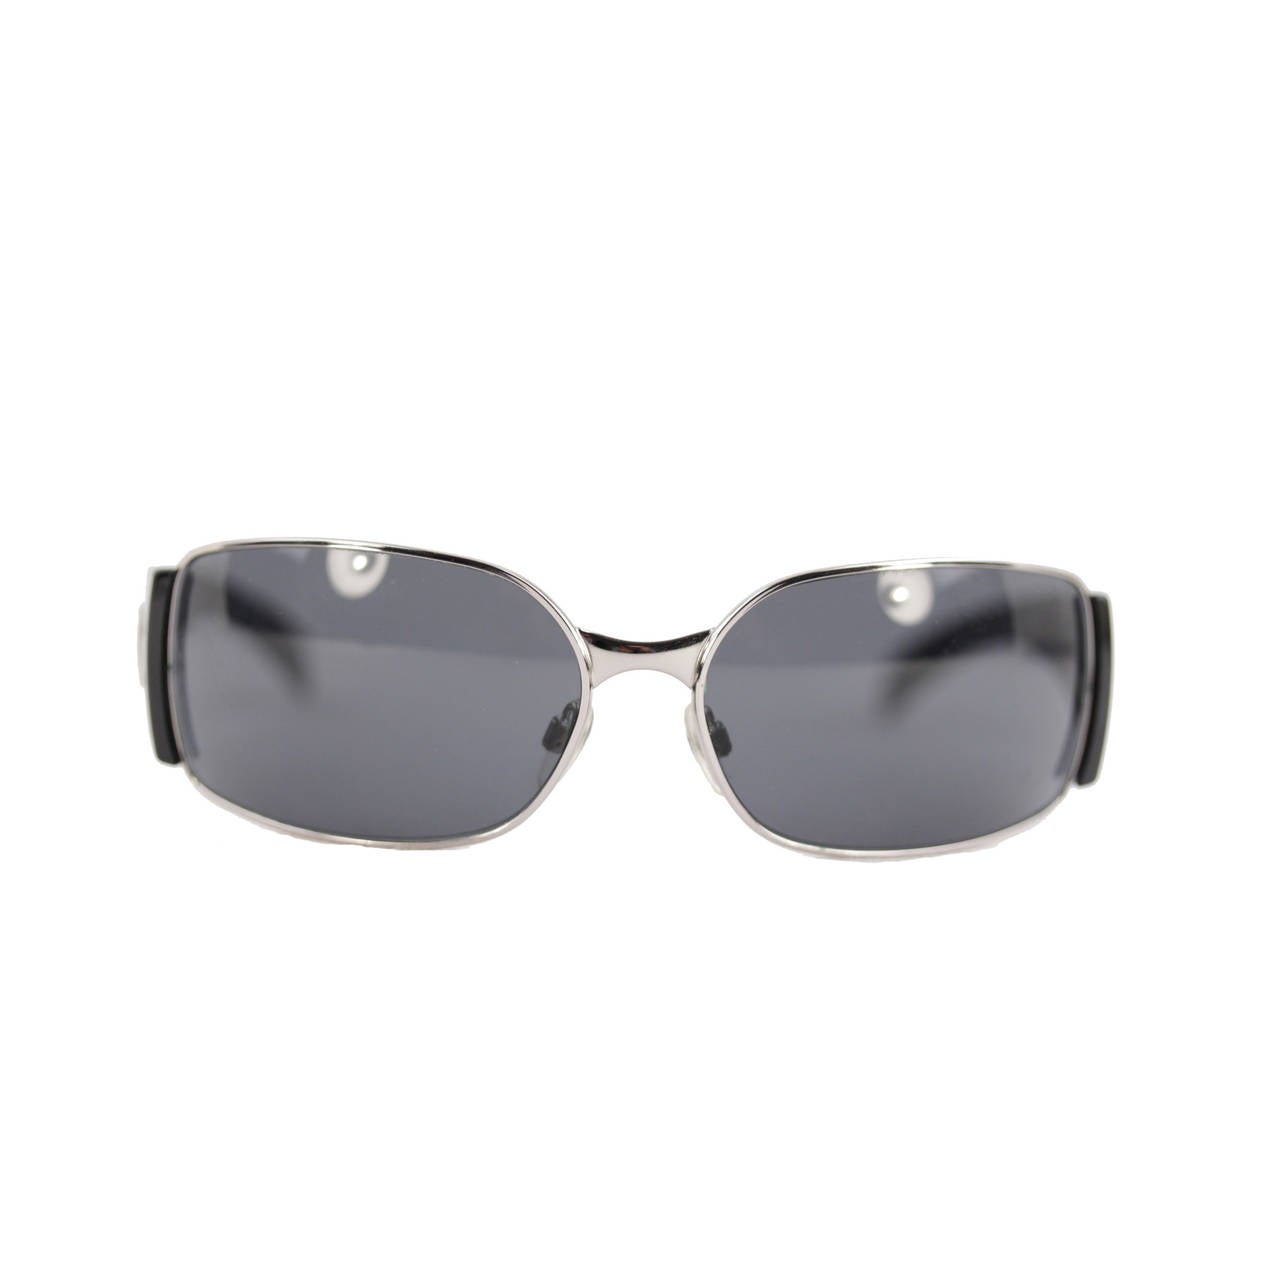 Chanel Silver Mirrored Round Sunglasses ○ Labellov ○ Buy and